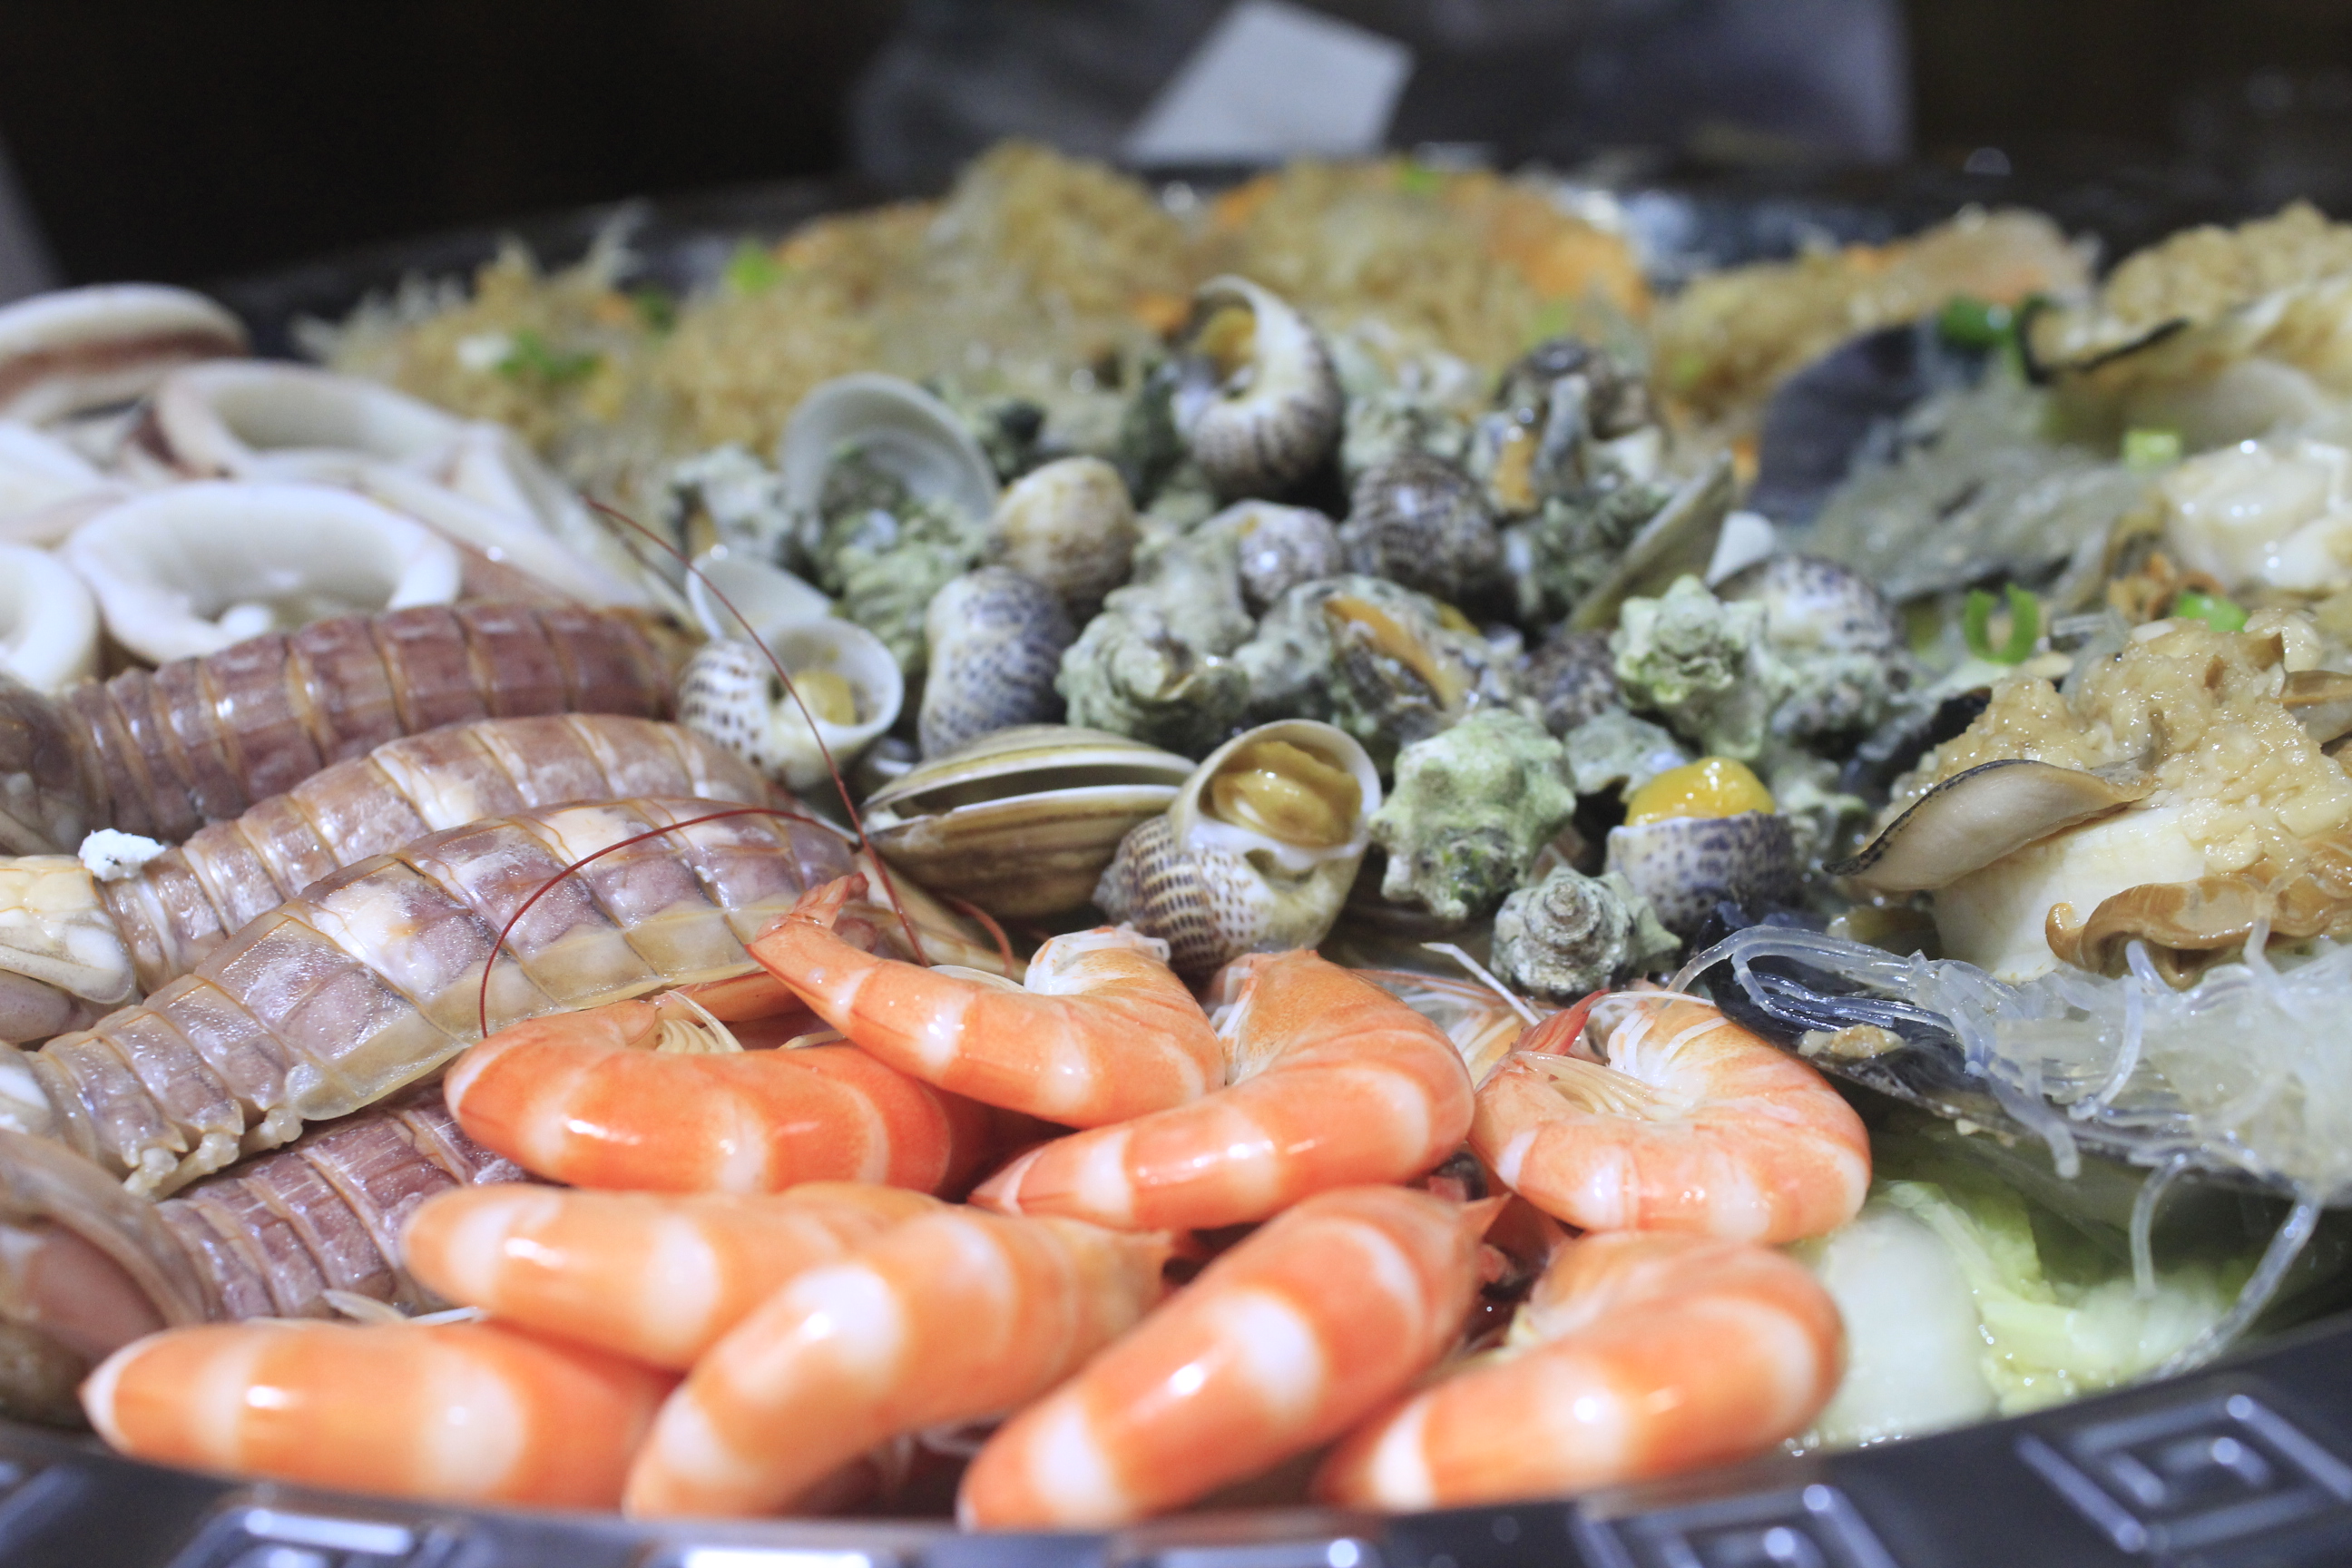 【海鲜拼盘】:这一道海鲜拼盘可以用盆来形容,由鲜虾,虾姑,章鱼圈,